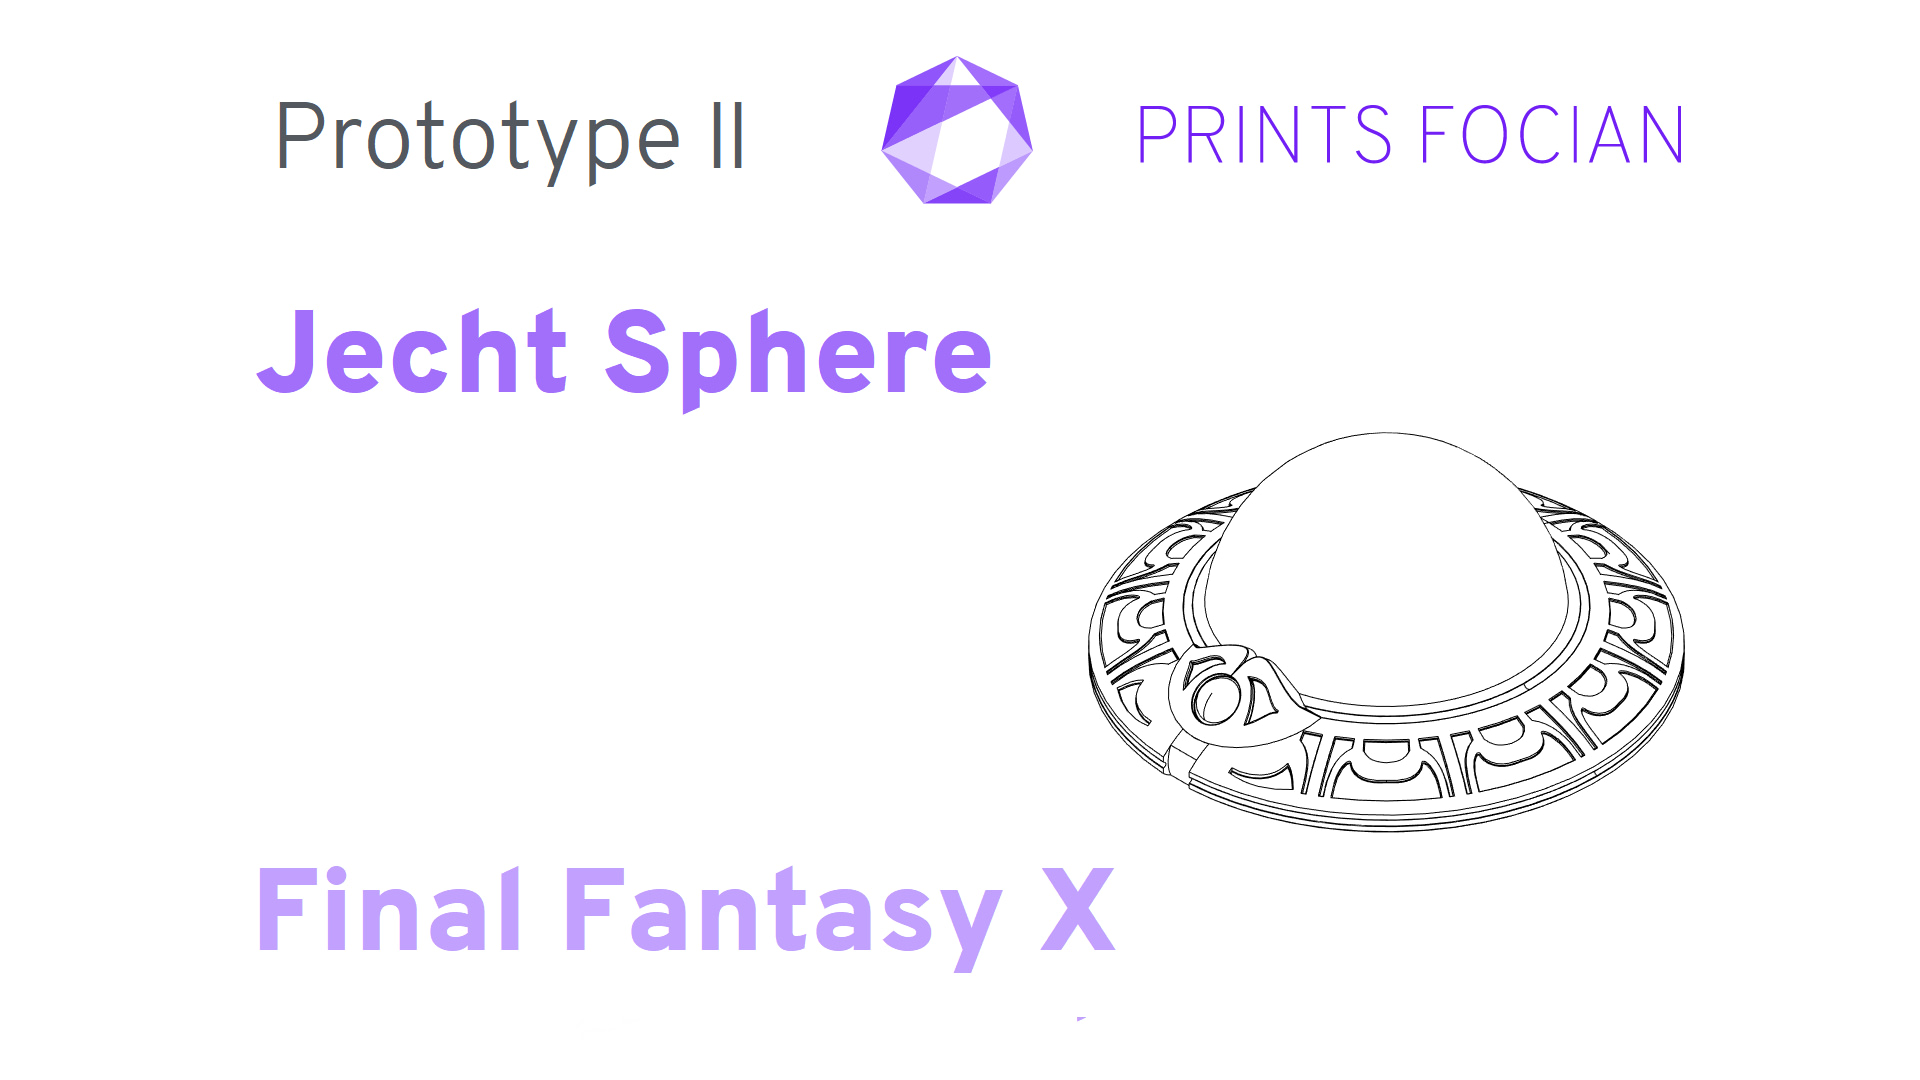 Prints Focian Jecht Sphere Final Fantasy X Prototype II